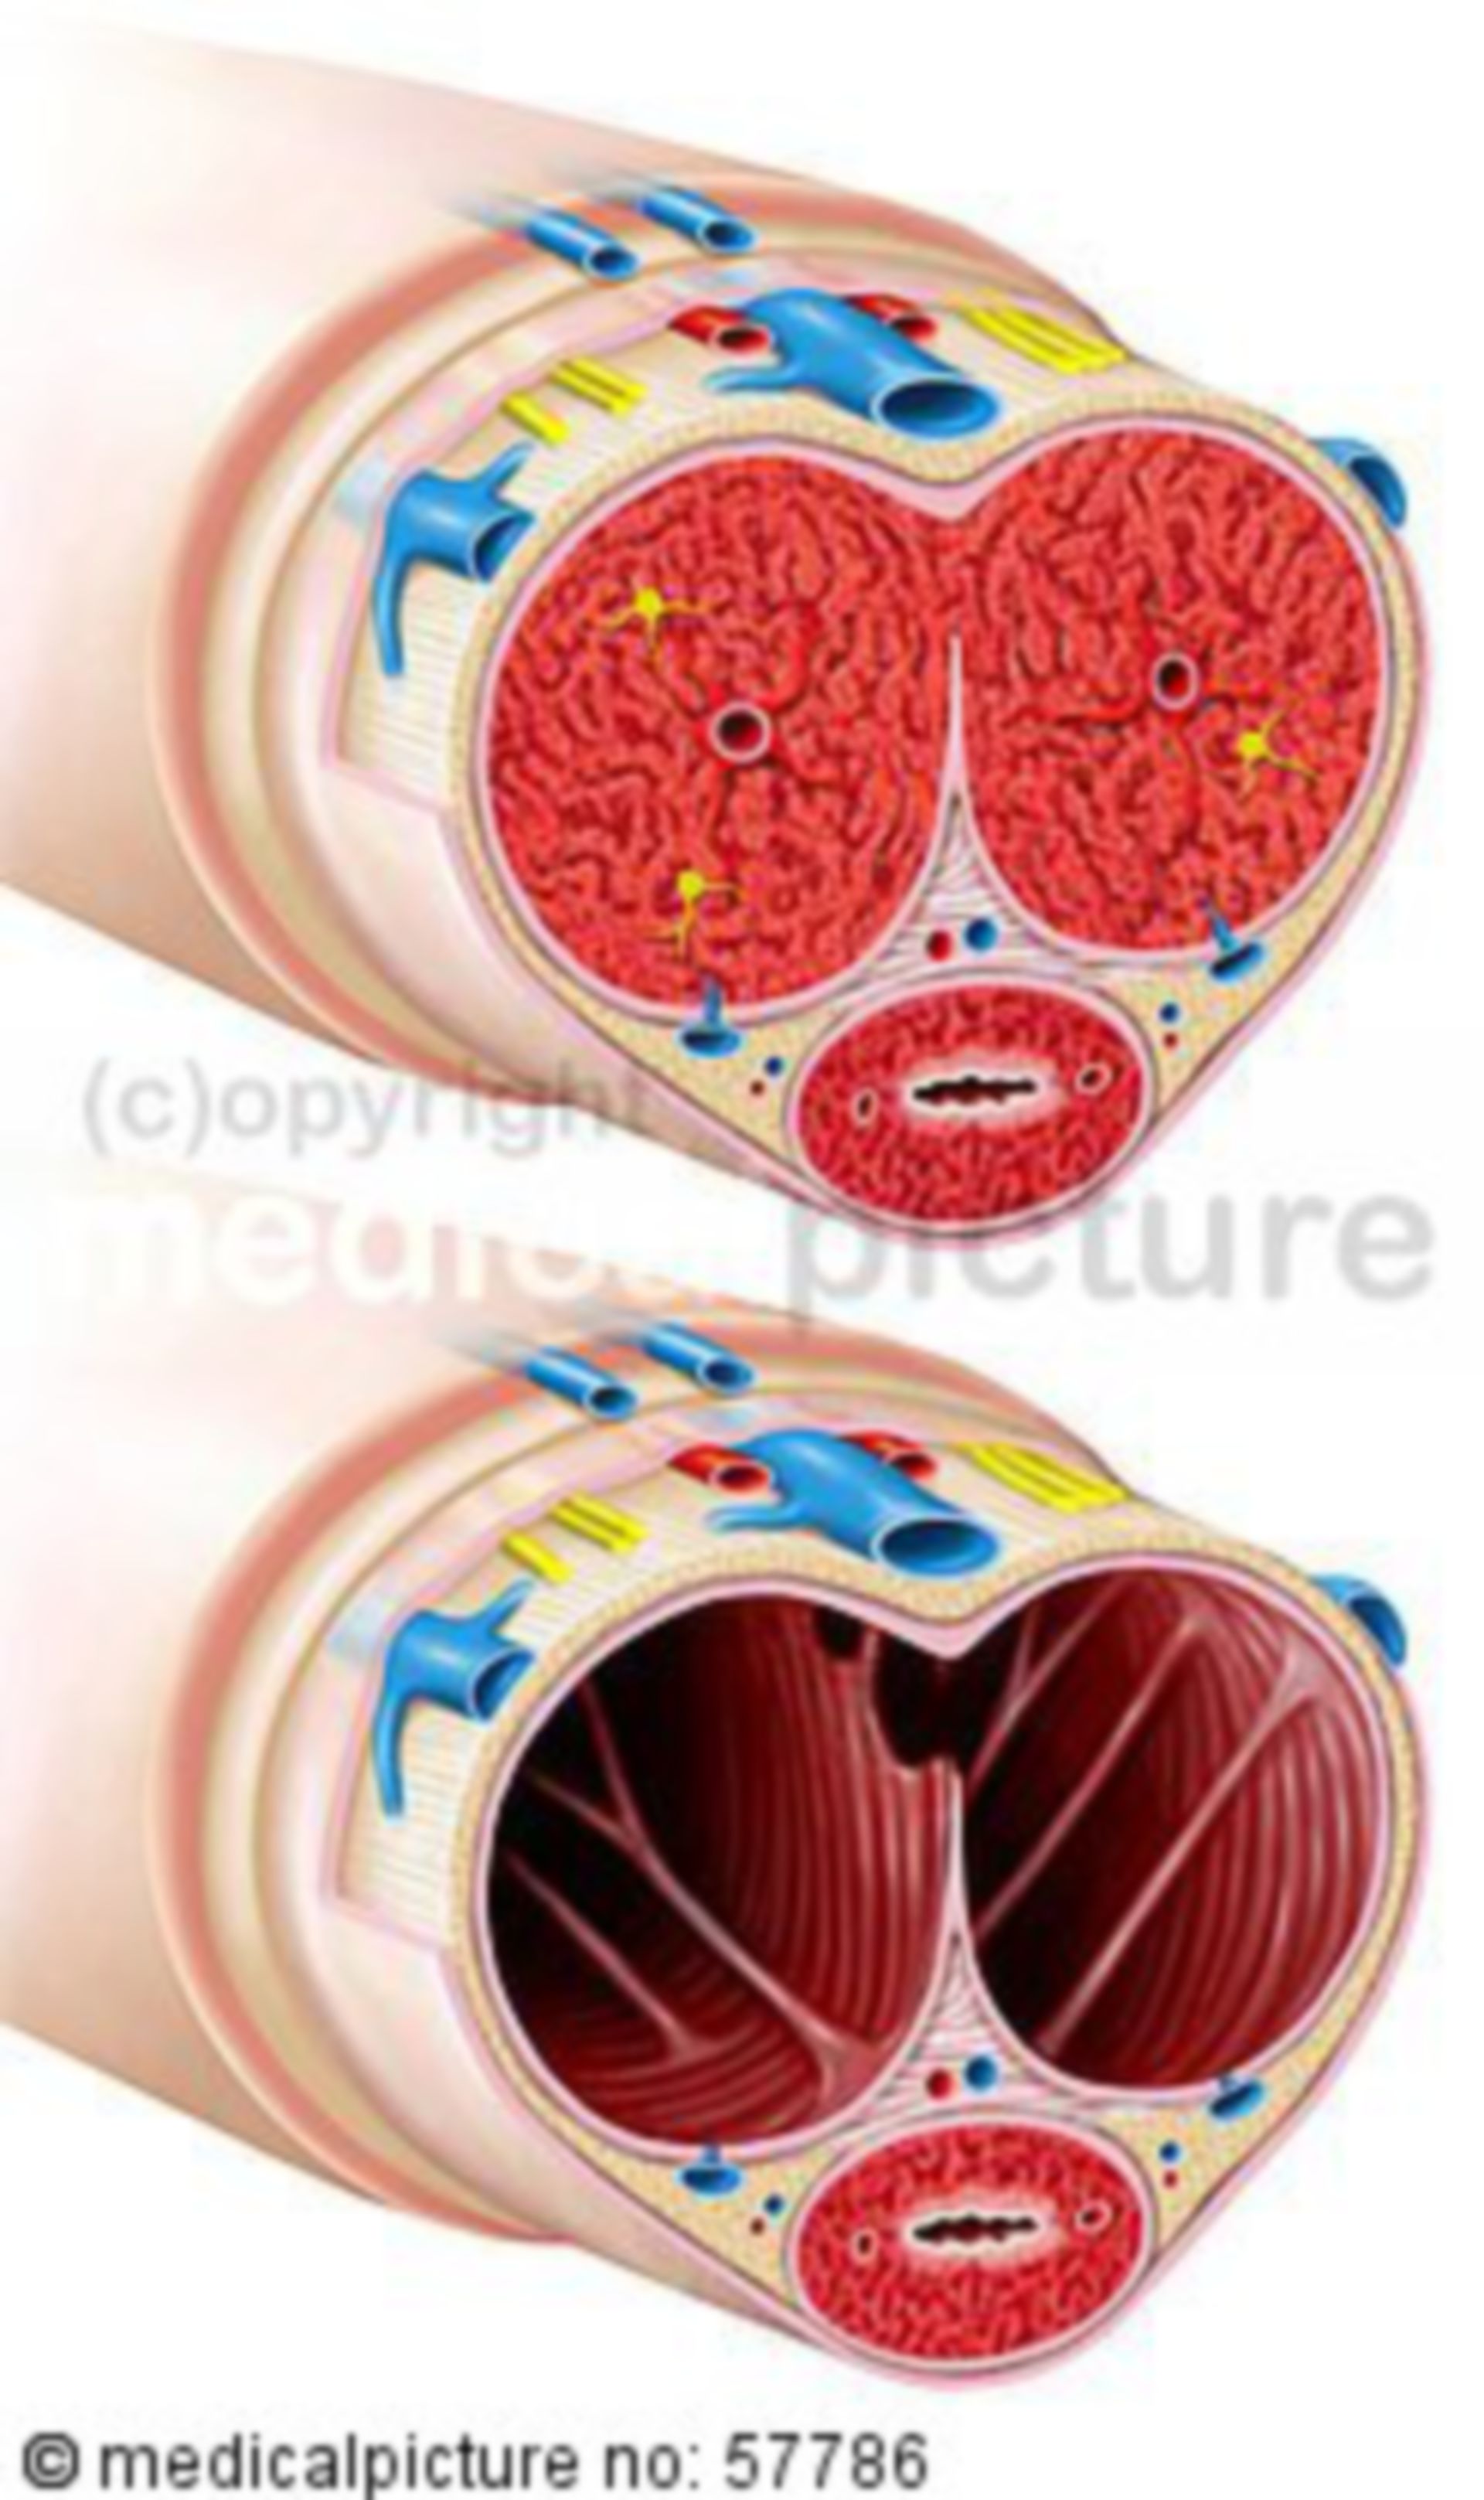 Anatomische illustrationen - Querschnitt durch Penis